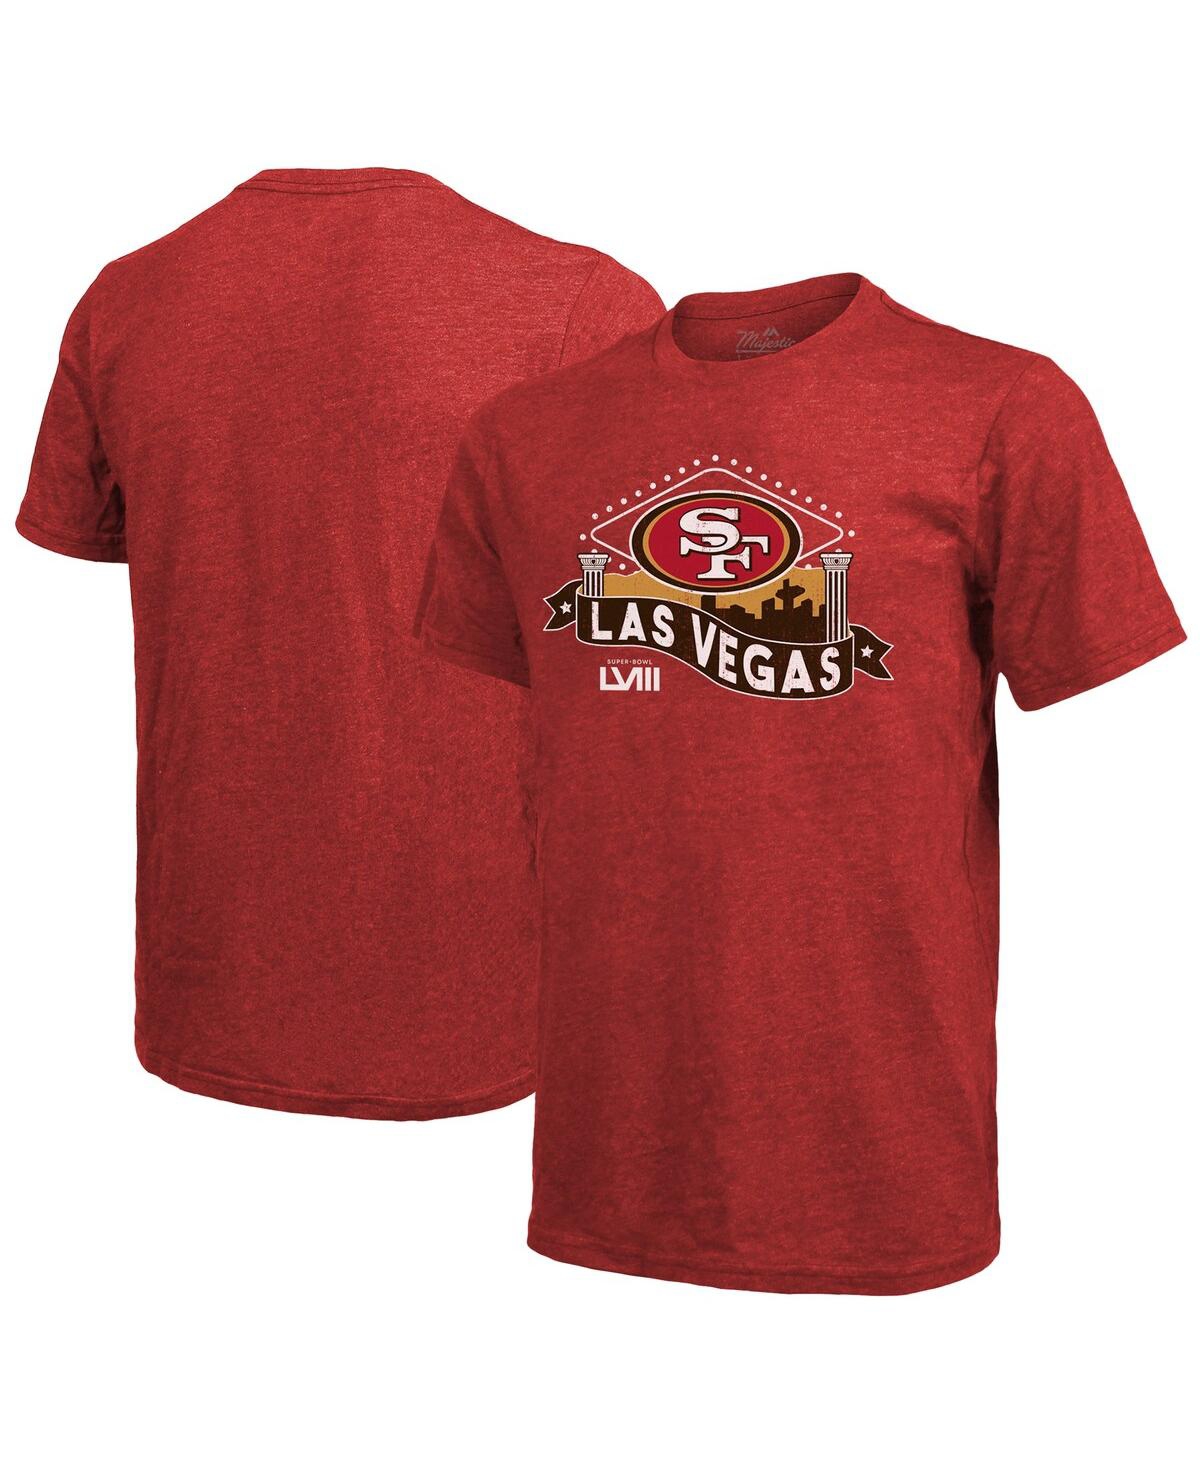 Men's Majestic Threads Scarlet San Francisco 49ers Super Bowl Lviii Tri-Blend T-shirt - Scarlet